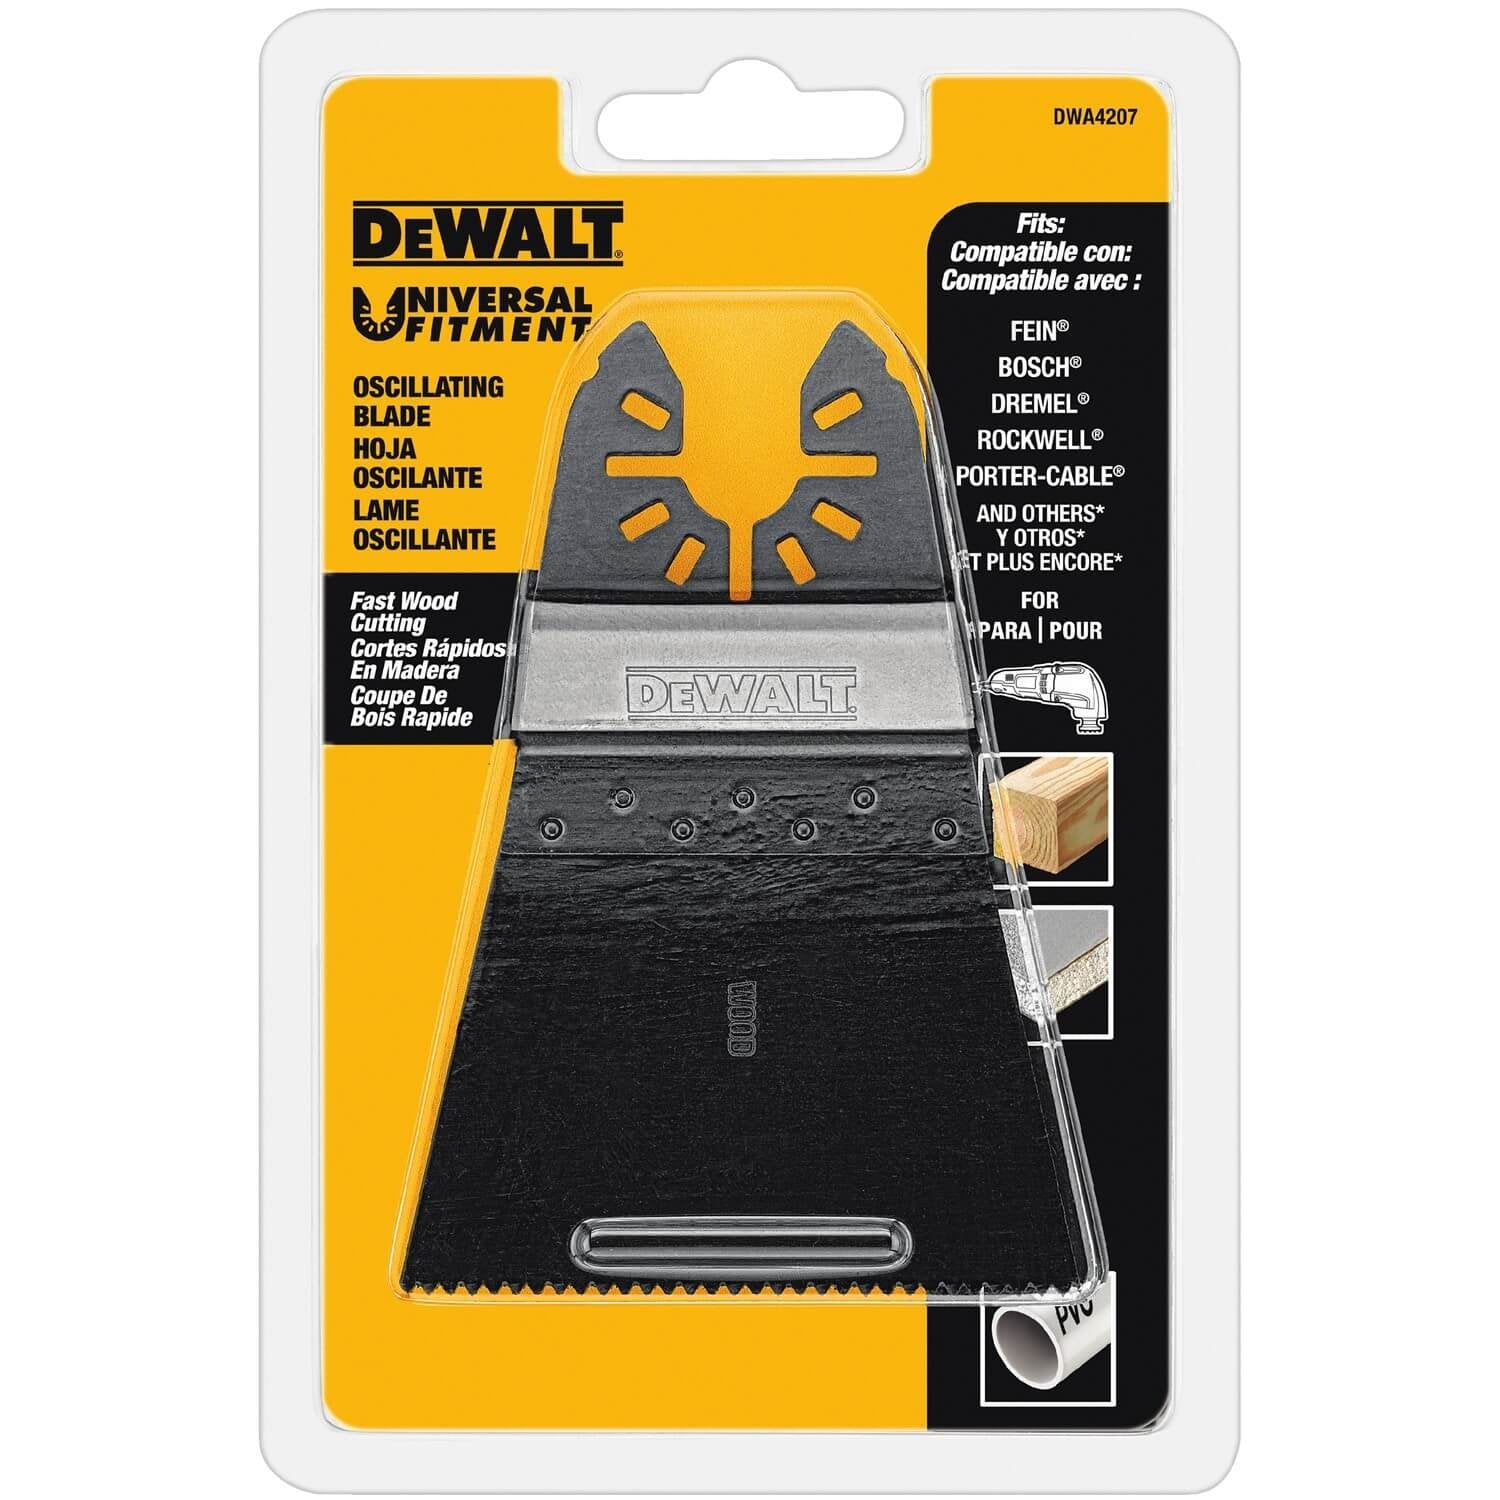 DEWALT DWA4207 - Offset Fast Cutting Wood Oscillating Blade